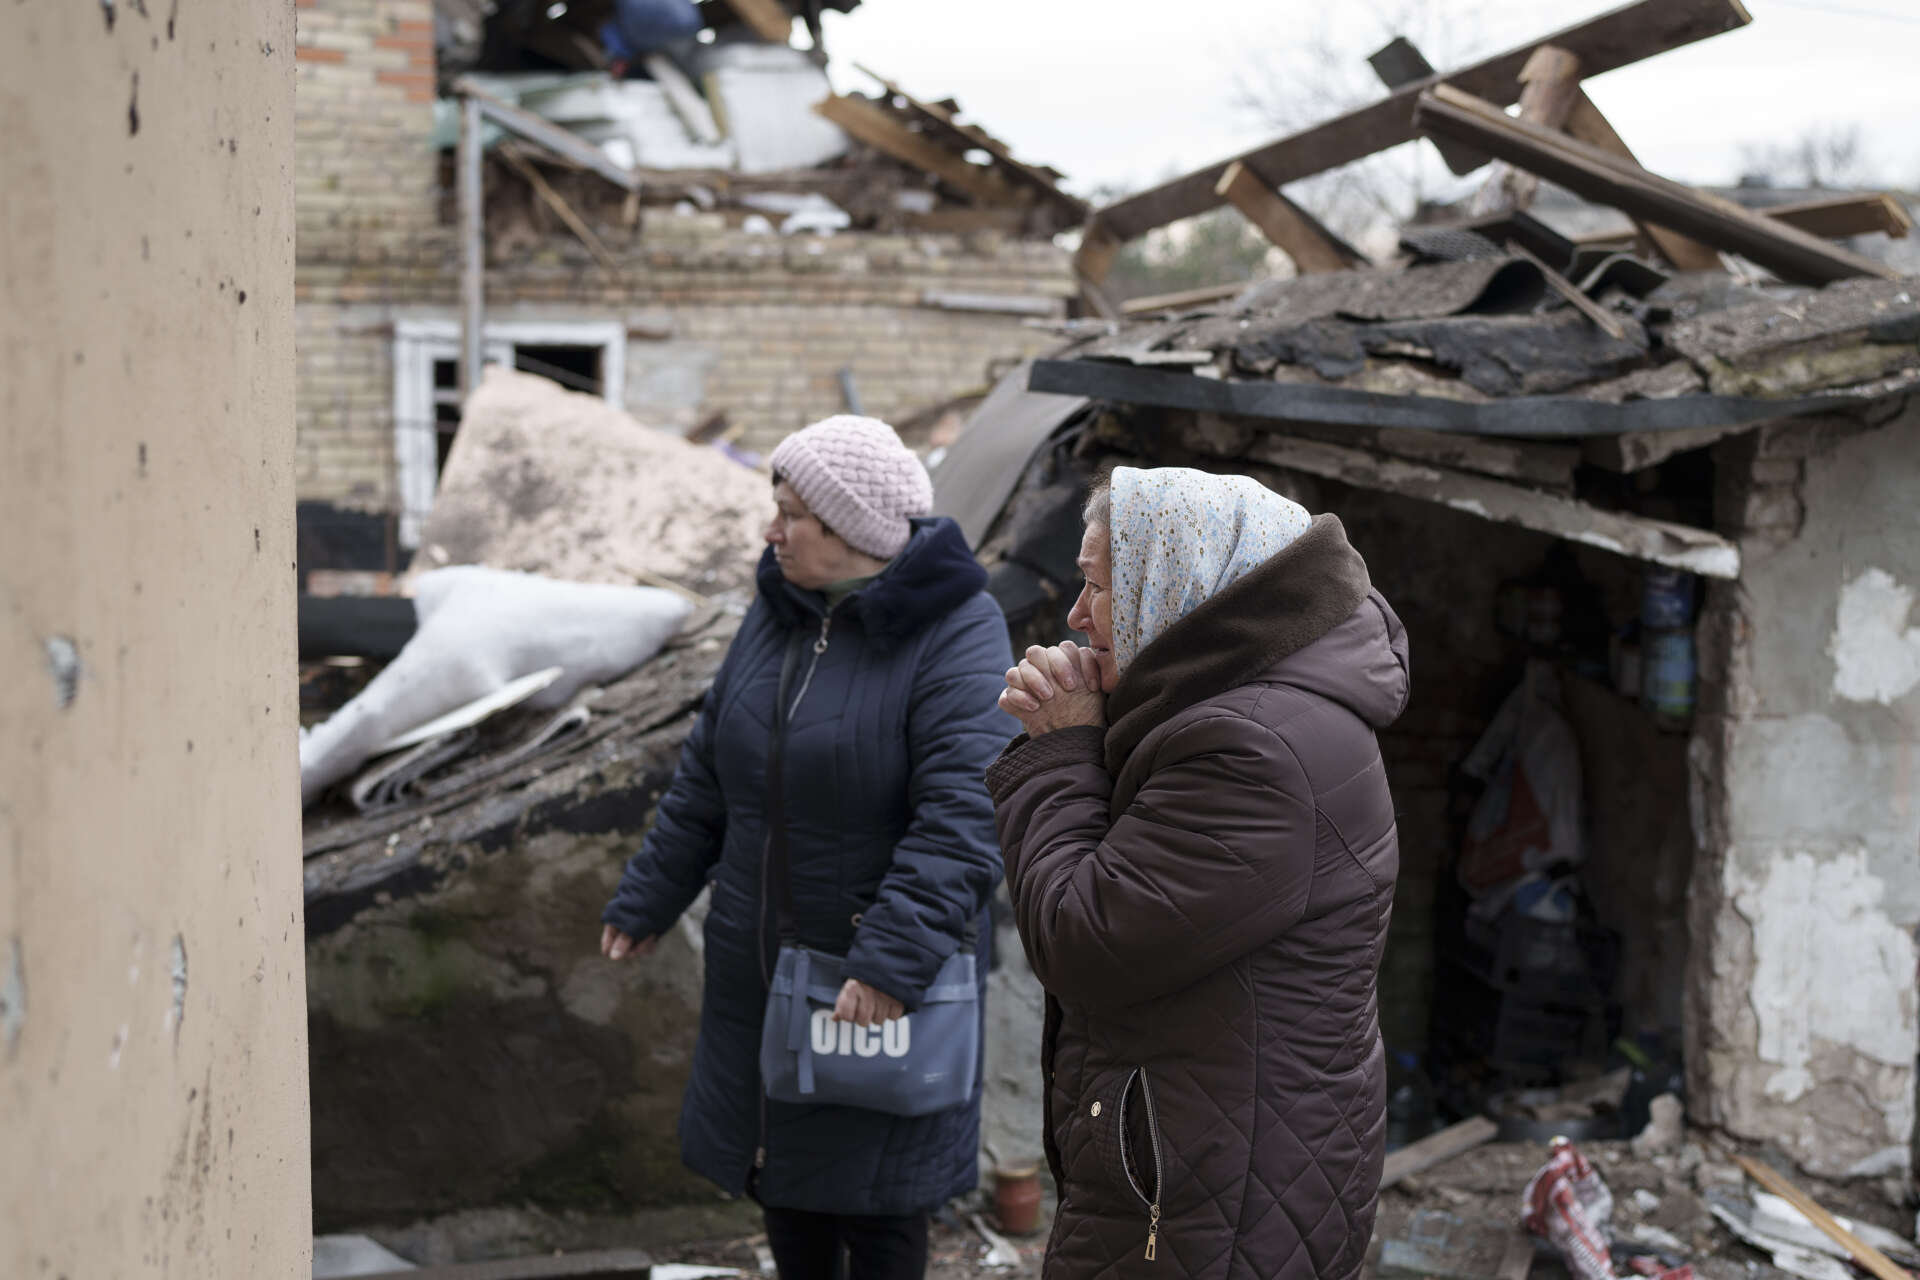 Anhelina, till höger, ser på medan räddningspersonal arbetar i resterna av hennes hus i Kiev som förstördes i de omfattande ryska attackerna i torsdags.